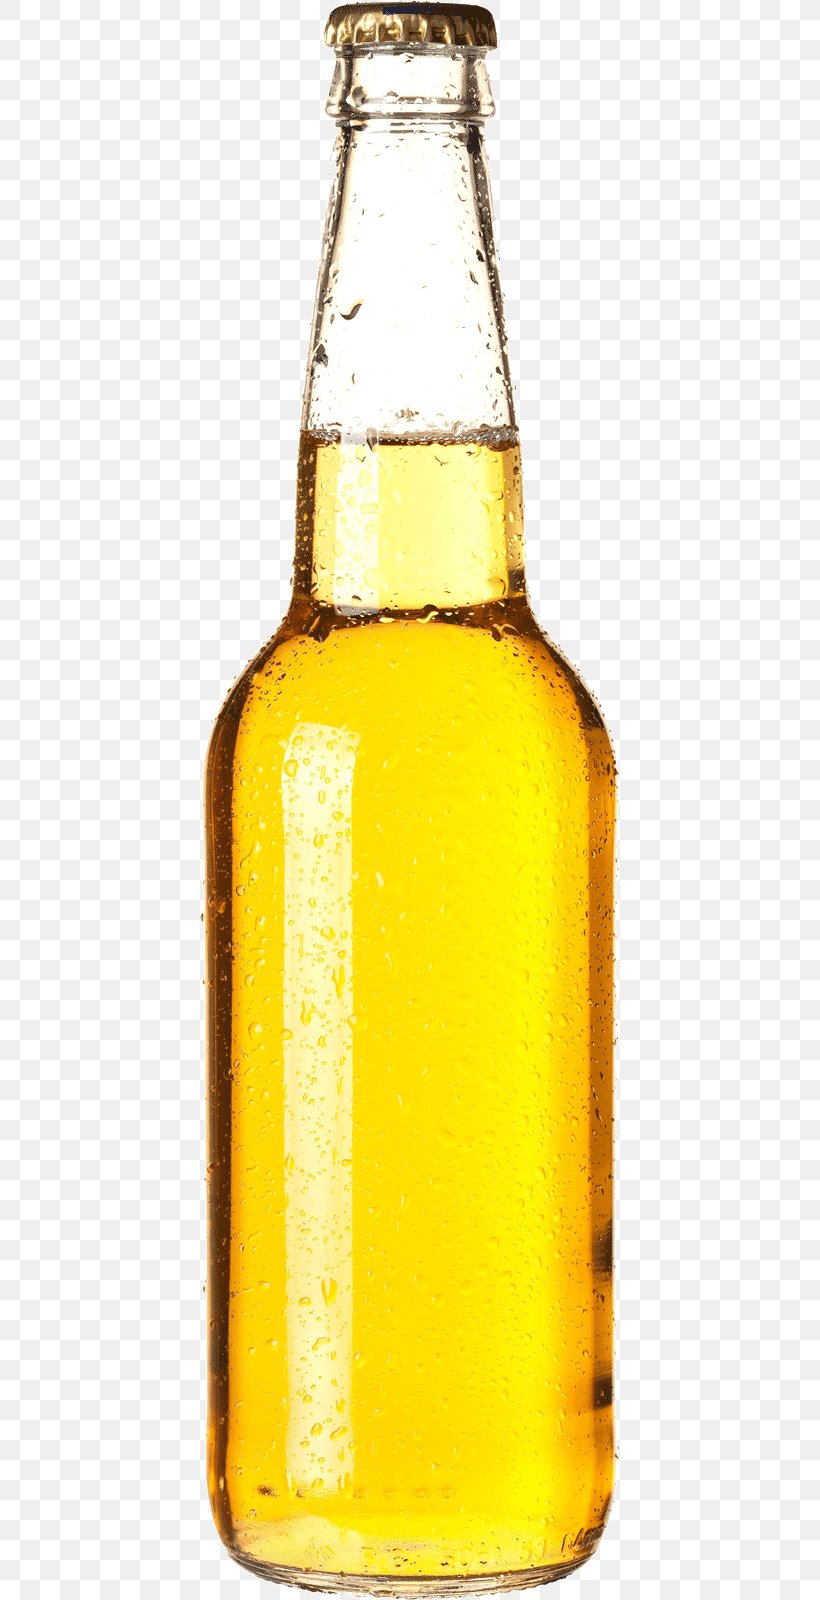 Download Beer Bottle Corona Brewery Png 419x1600px Beer Alcoholic Drink Beer Bottle Beer Glass Beertender Download Free